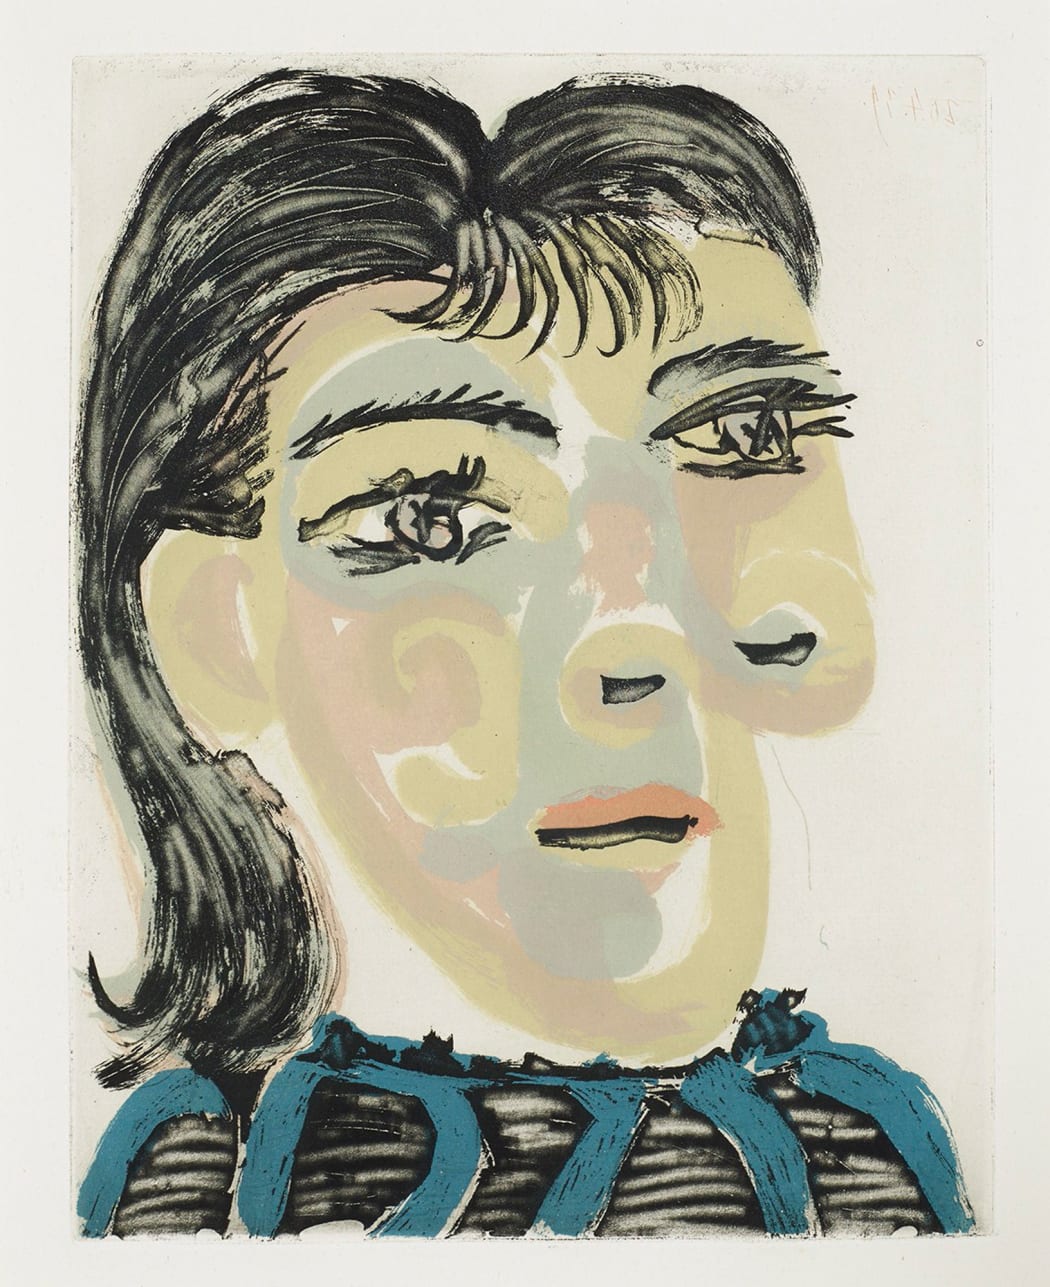 Tête de Femme No. 2. Portrait de Dora Maar (B1340), 1939, aquatint, 17 3/4 x 13 1/4 inches